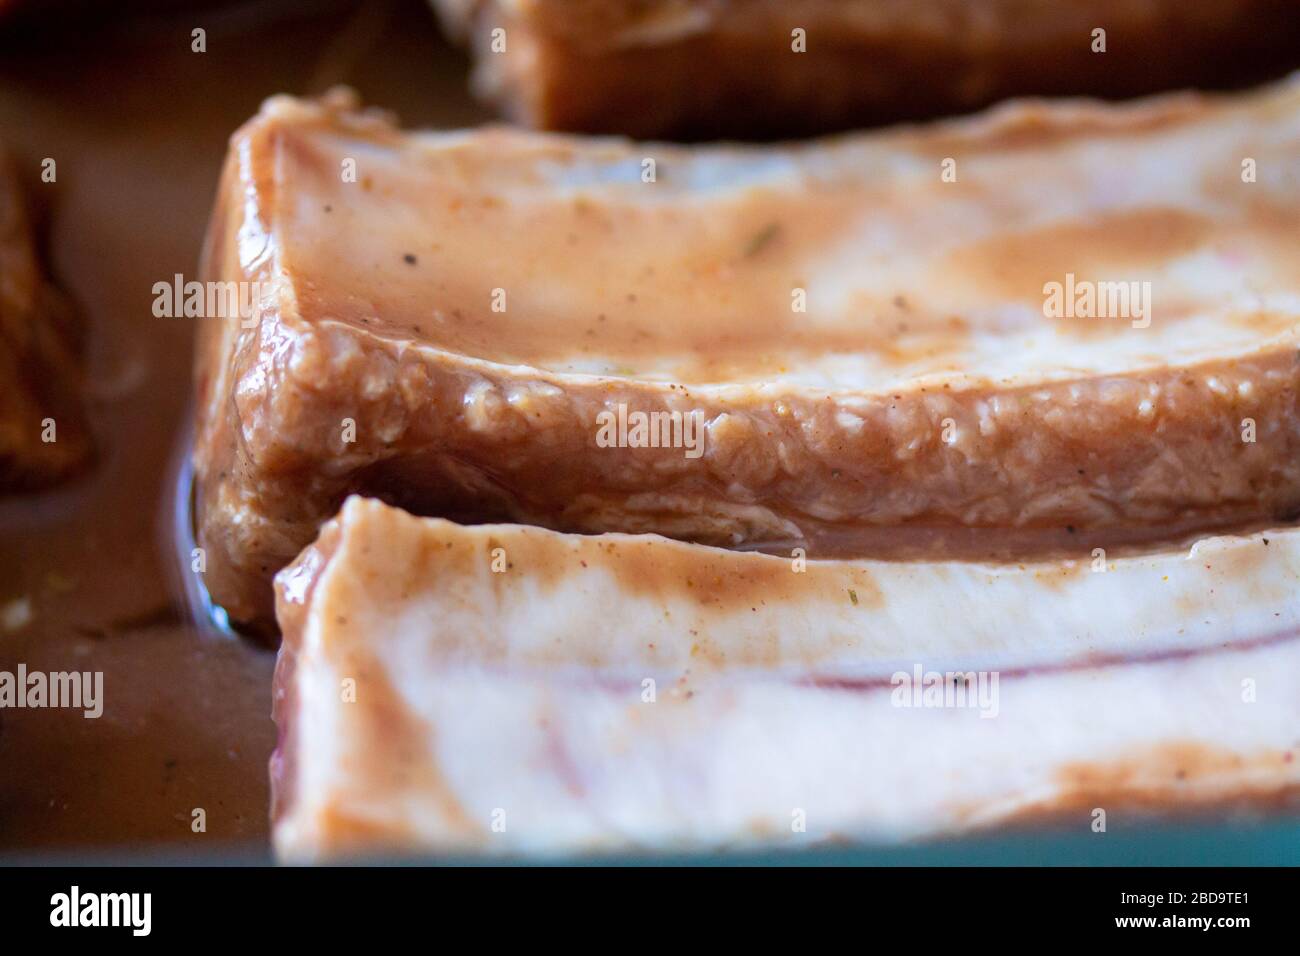 Costine di maiale crude e succose marinata pronte per la cottura. Immagine della lavorazione della carne. Fotografia di cibo sfondo primo piano Foto Stock